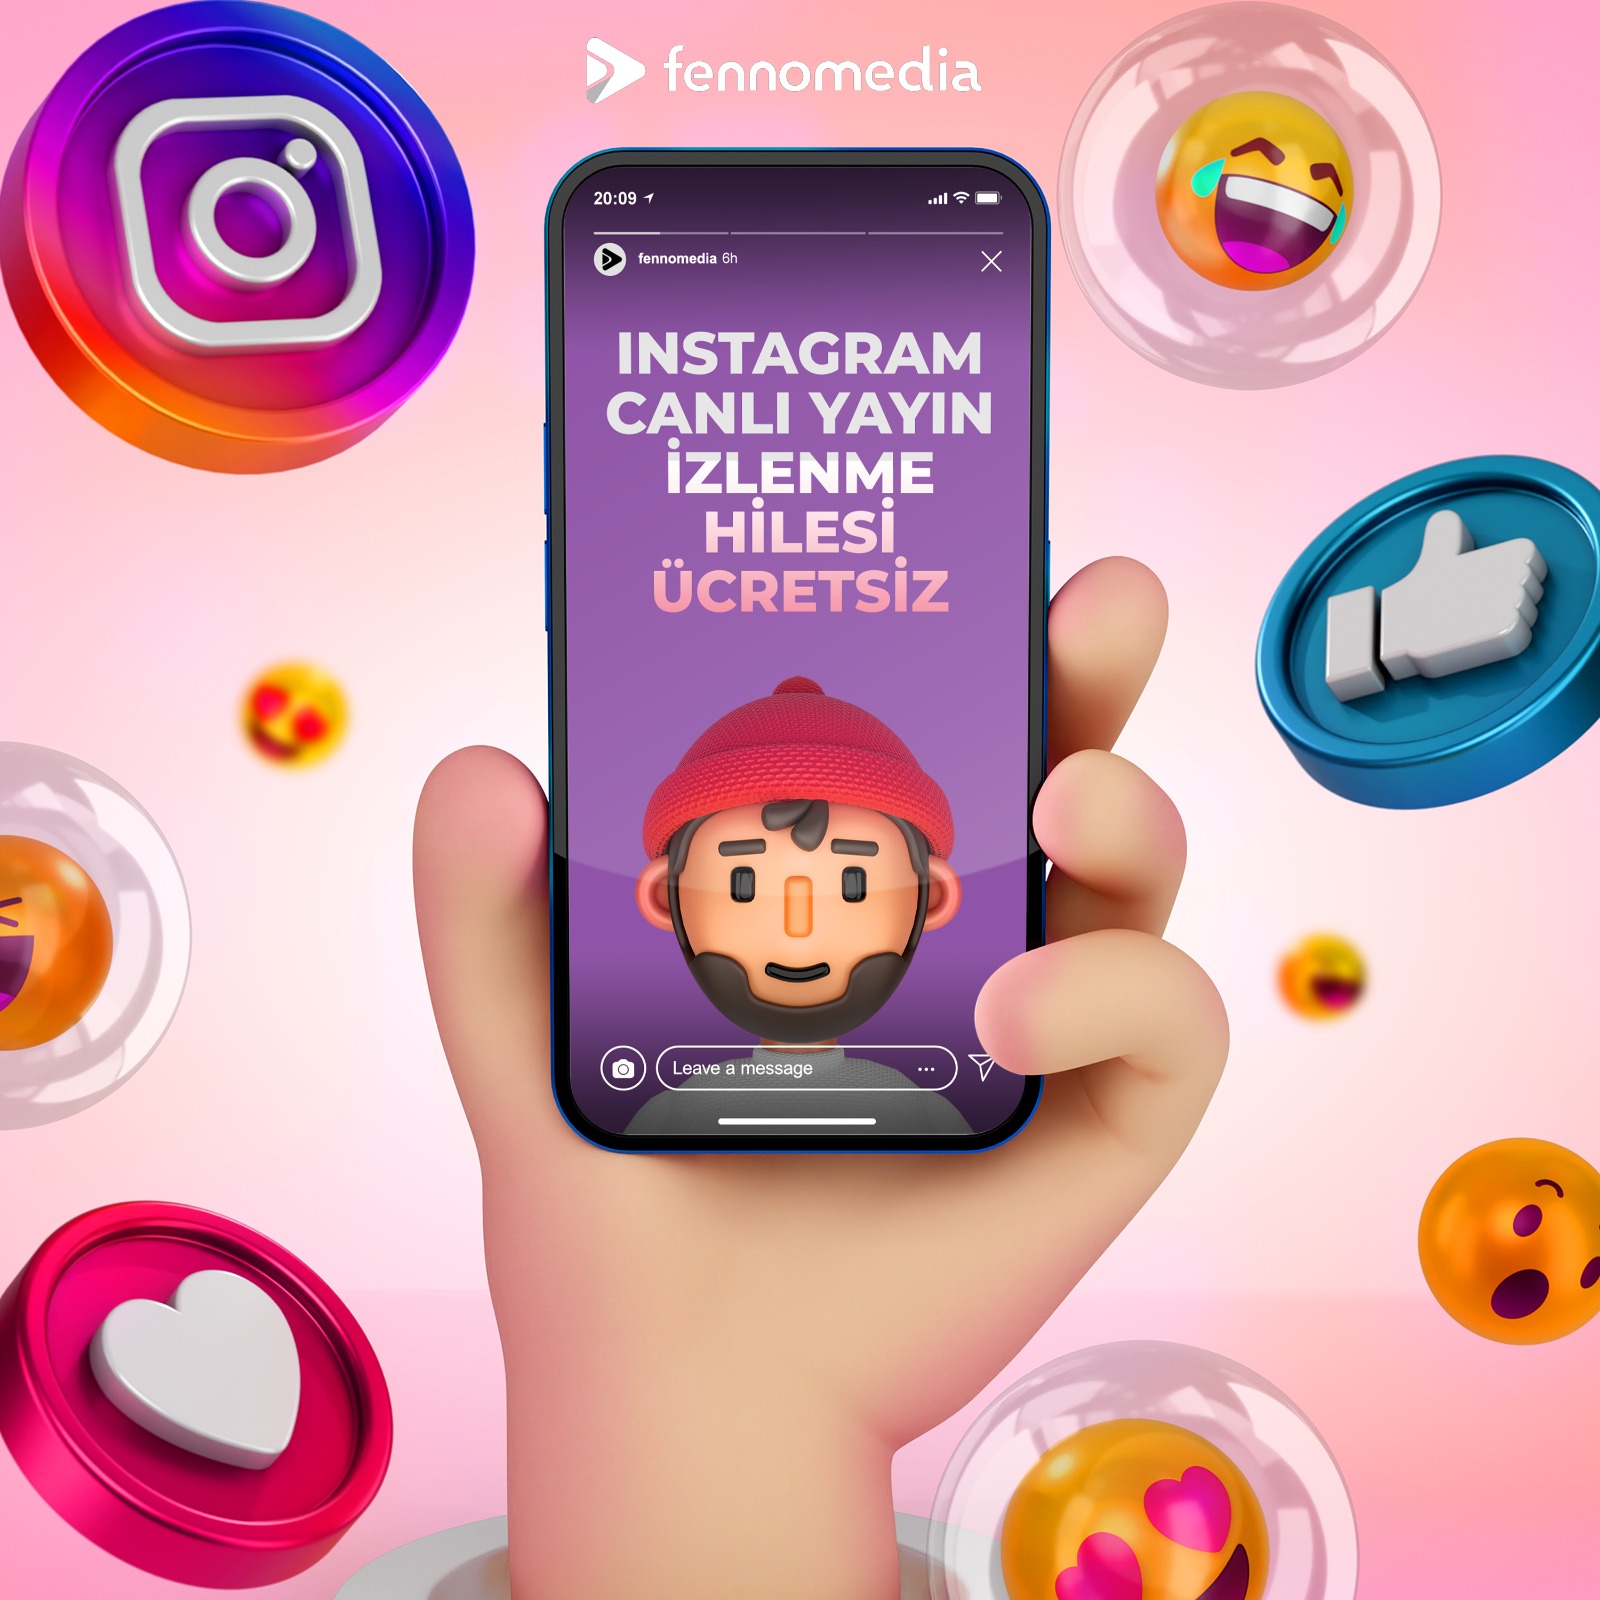 instagram hikaye izlenme hilesi sifresiz 2021 fennomedia